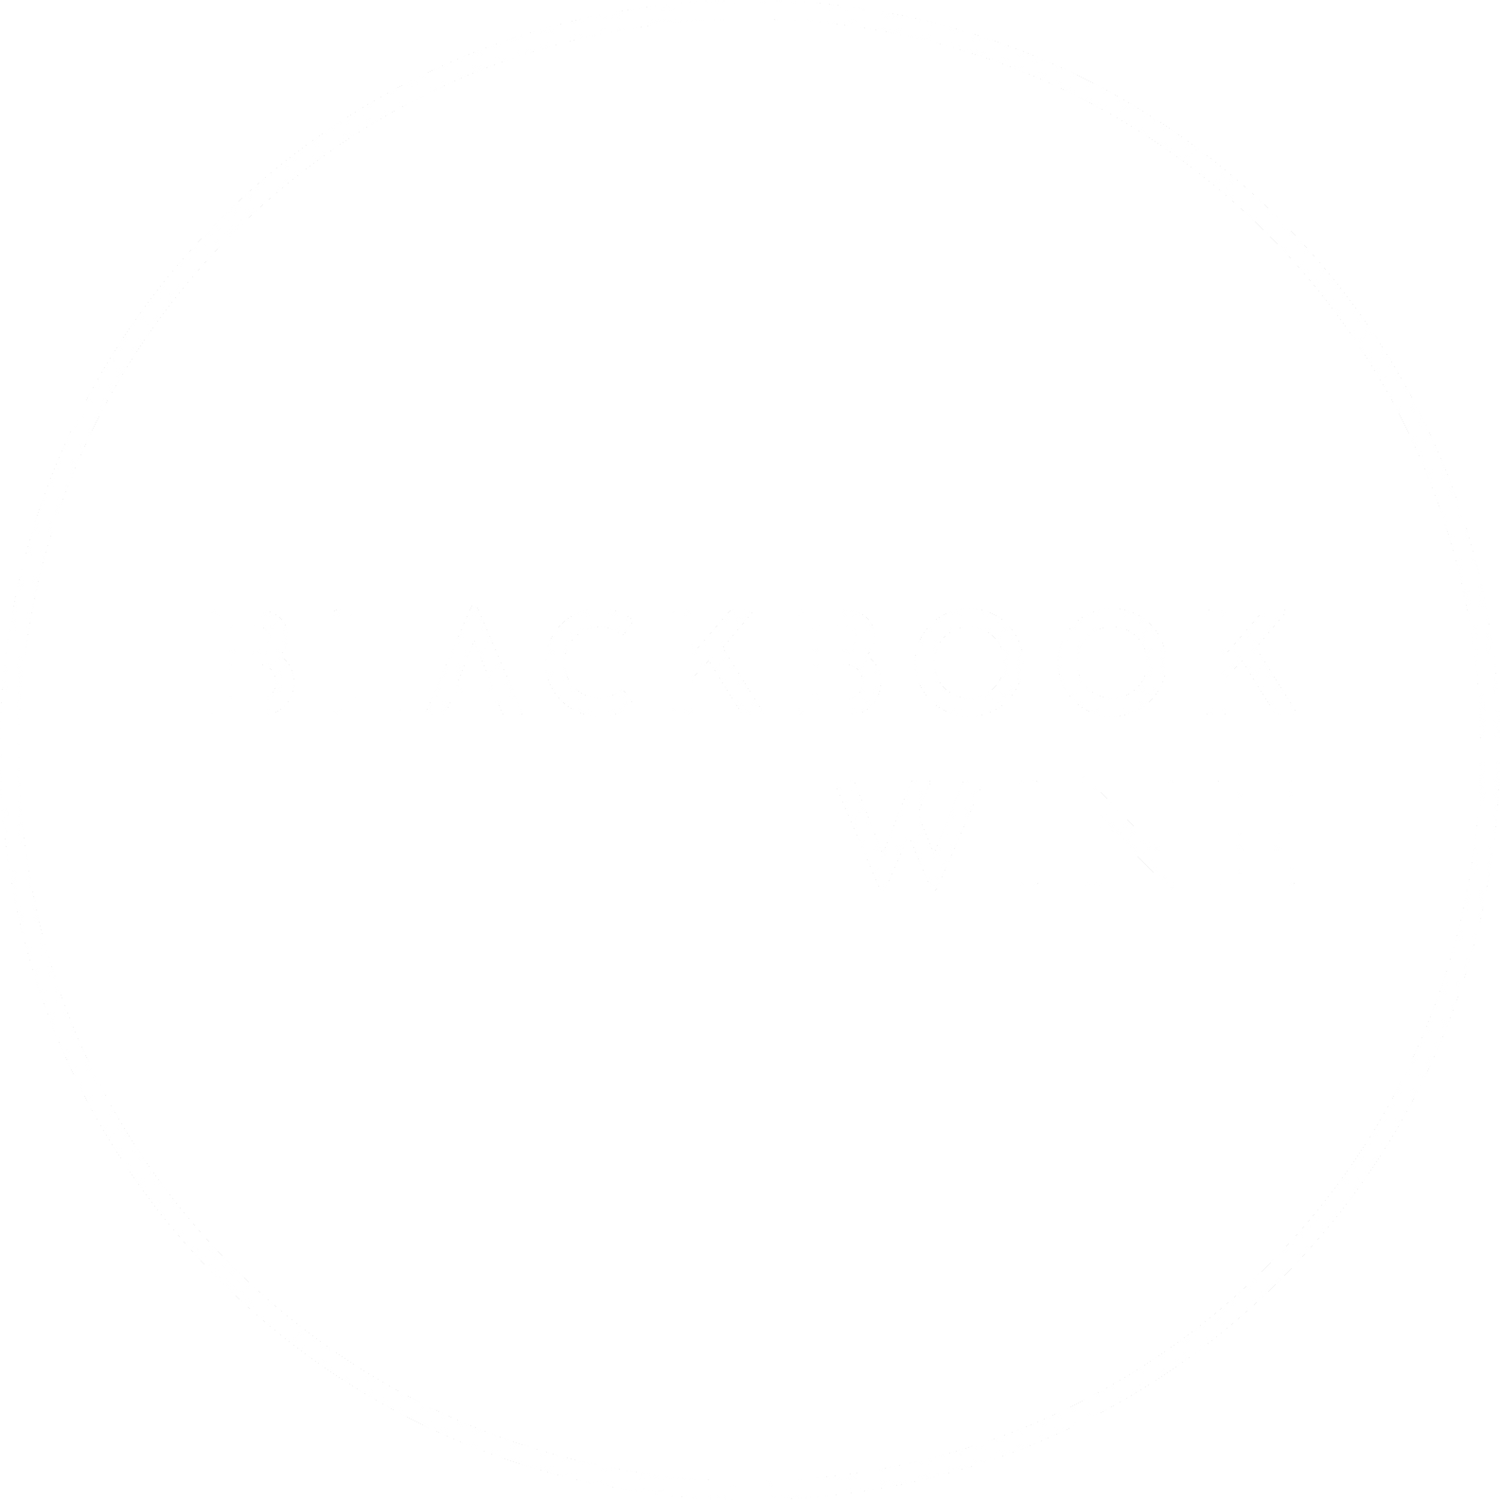 BLACKBOOK WINE